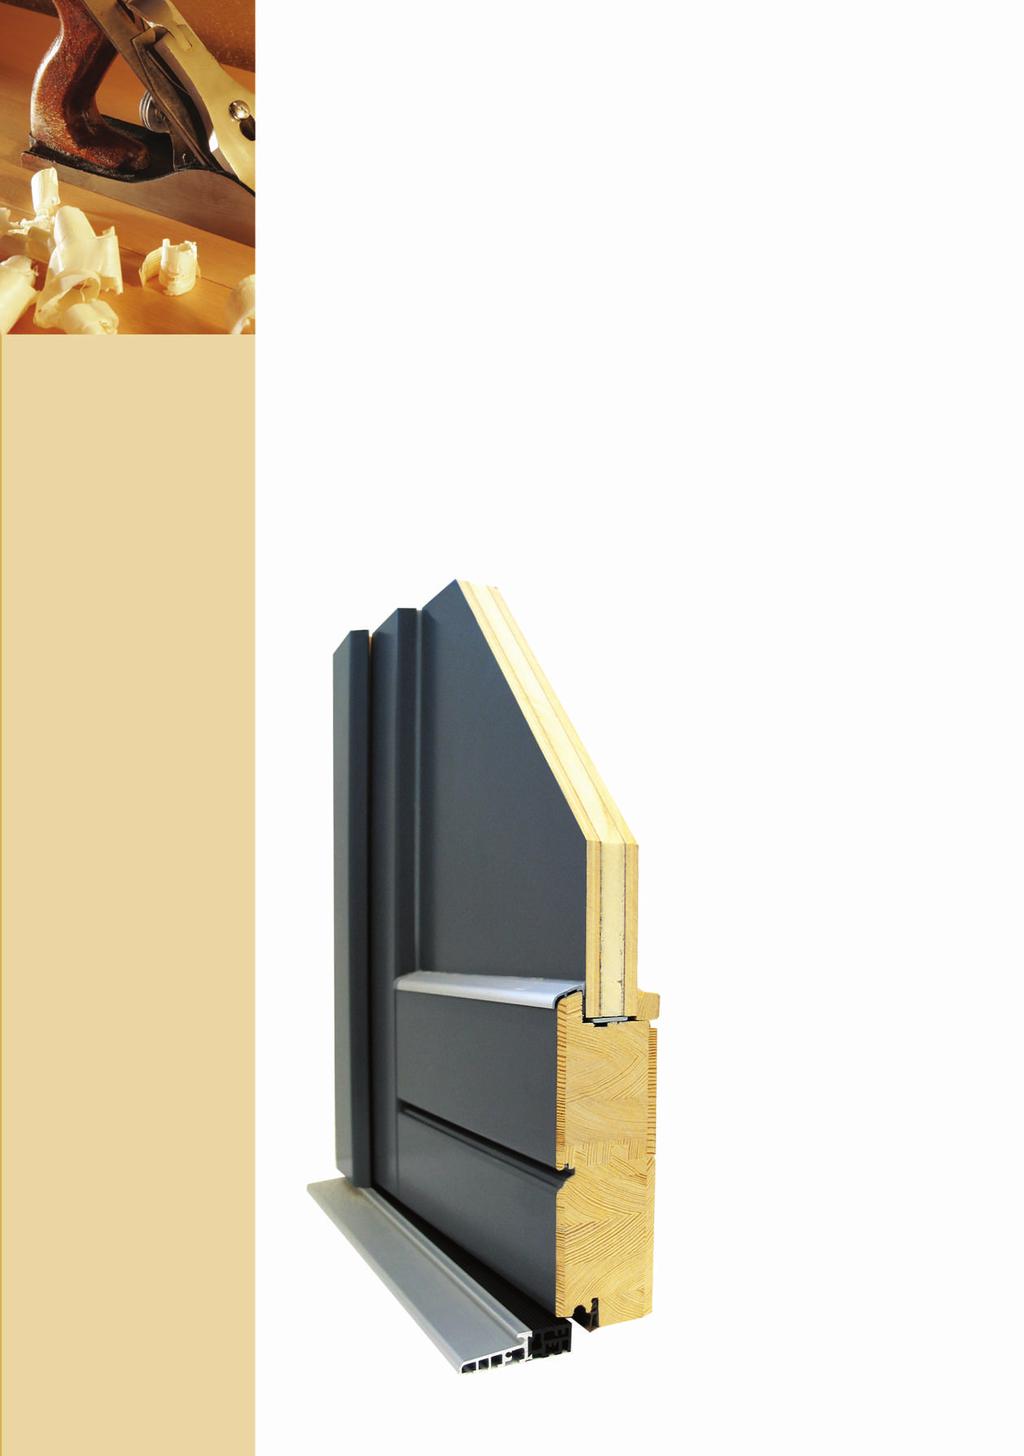 KONSTRUKCIJA IR PRIVALUMAI MEGRAME MEDIS klasikinės medinės lauko durys atsparios klimato pokyčiams, dėl specialios technologijos durų plokštė netrūkinėja ir nesideformuoja, durys pasižymi labai